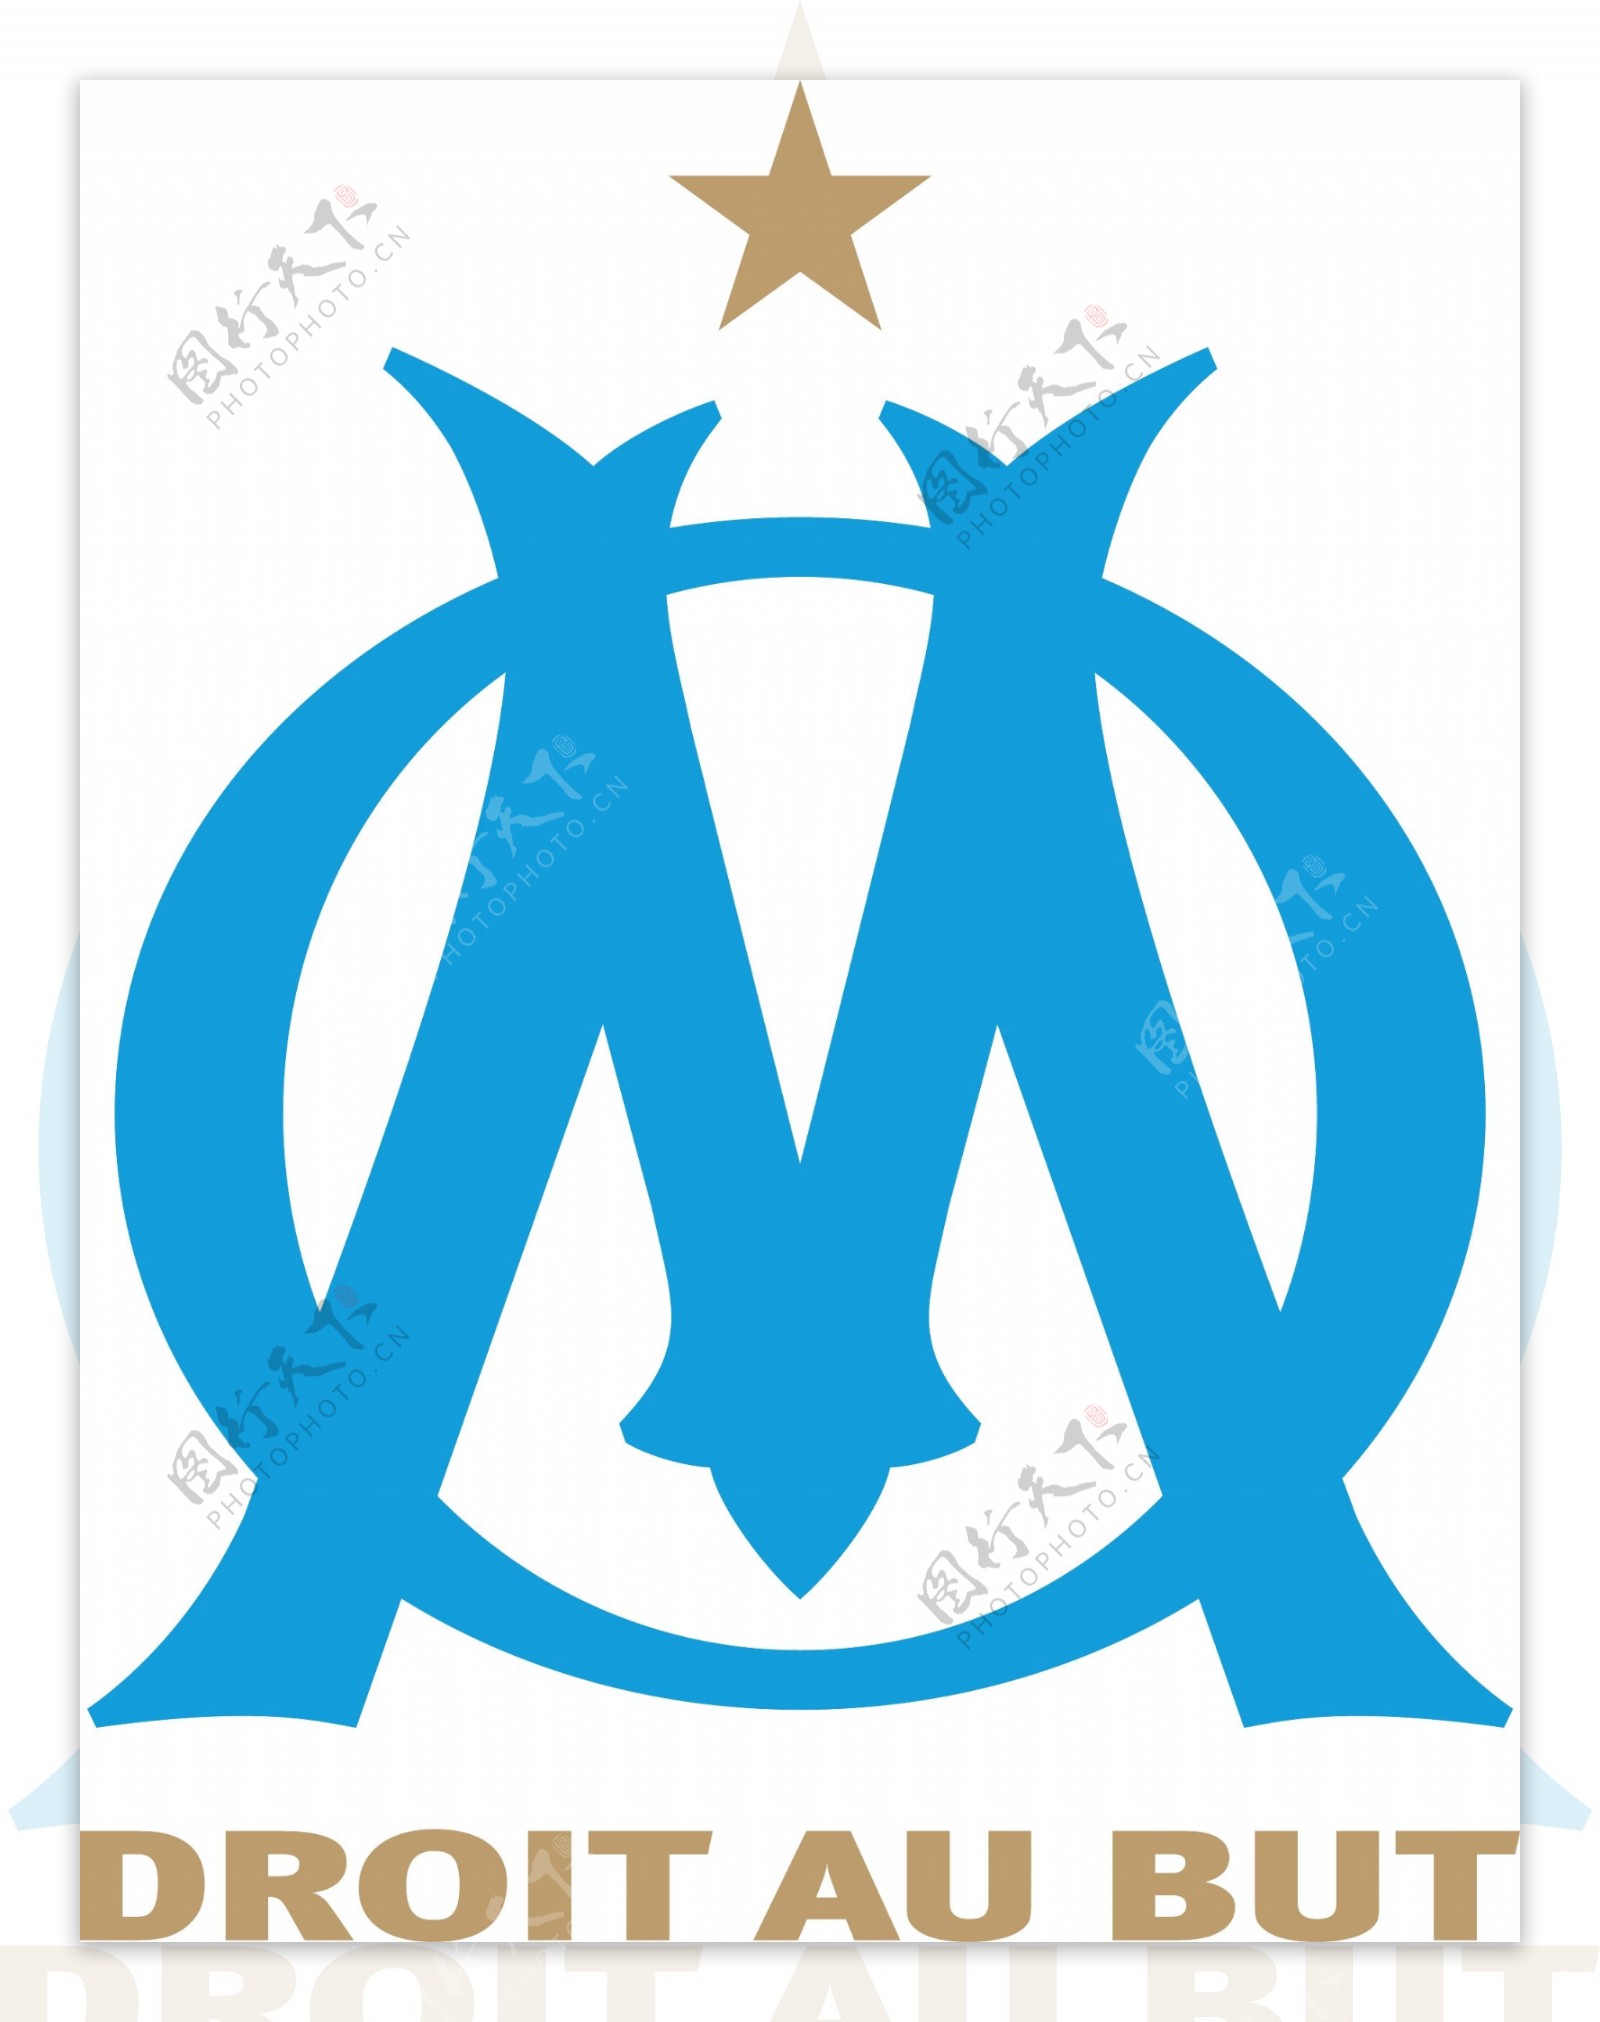 奥林匹克马赛足球俱乐部徽标图片